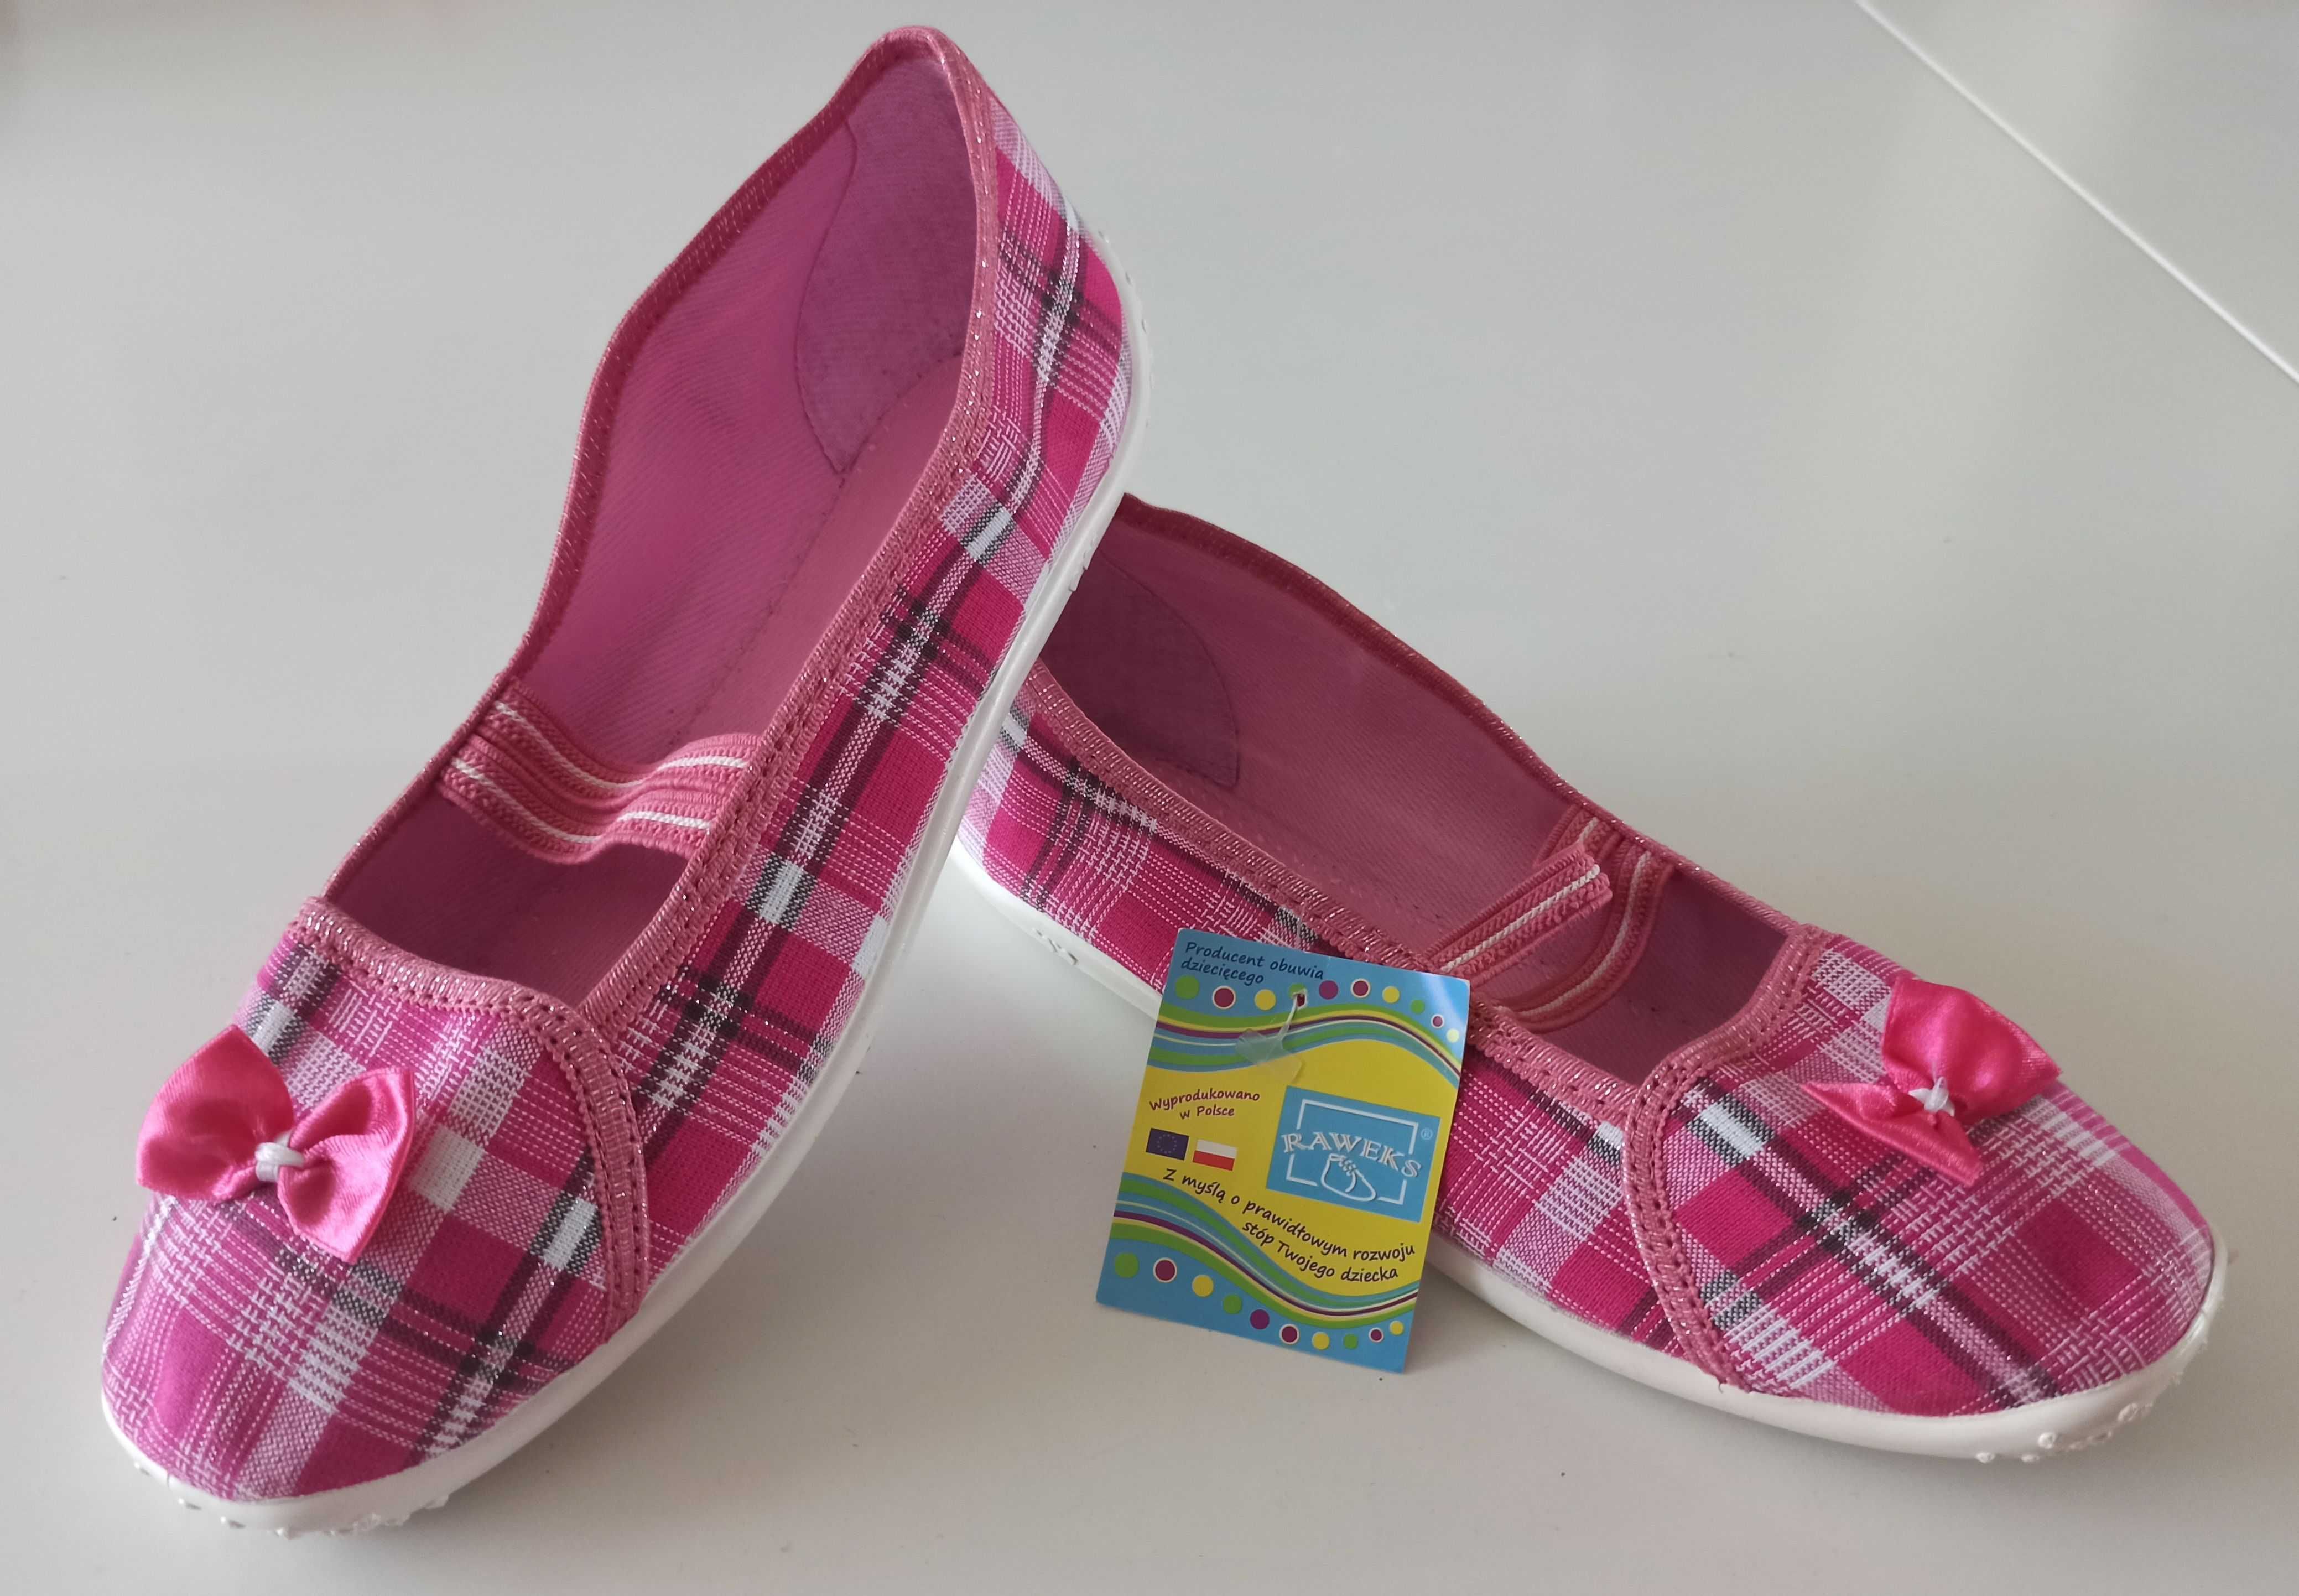 pantofle dla dziewczynki w różową kratkę Raweks rozmiar 35 NOWE